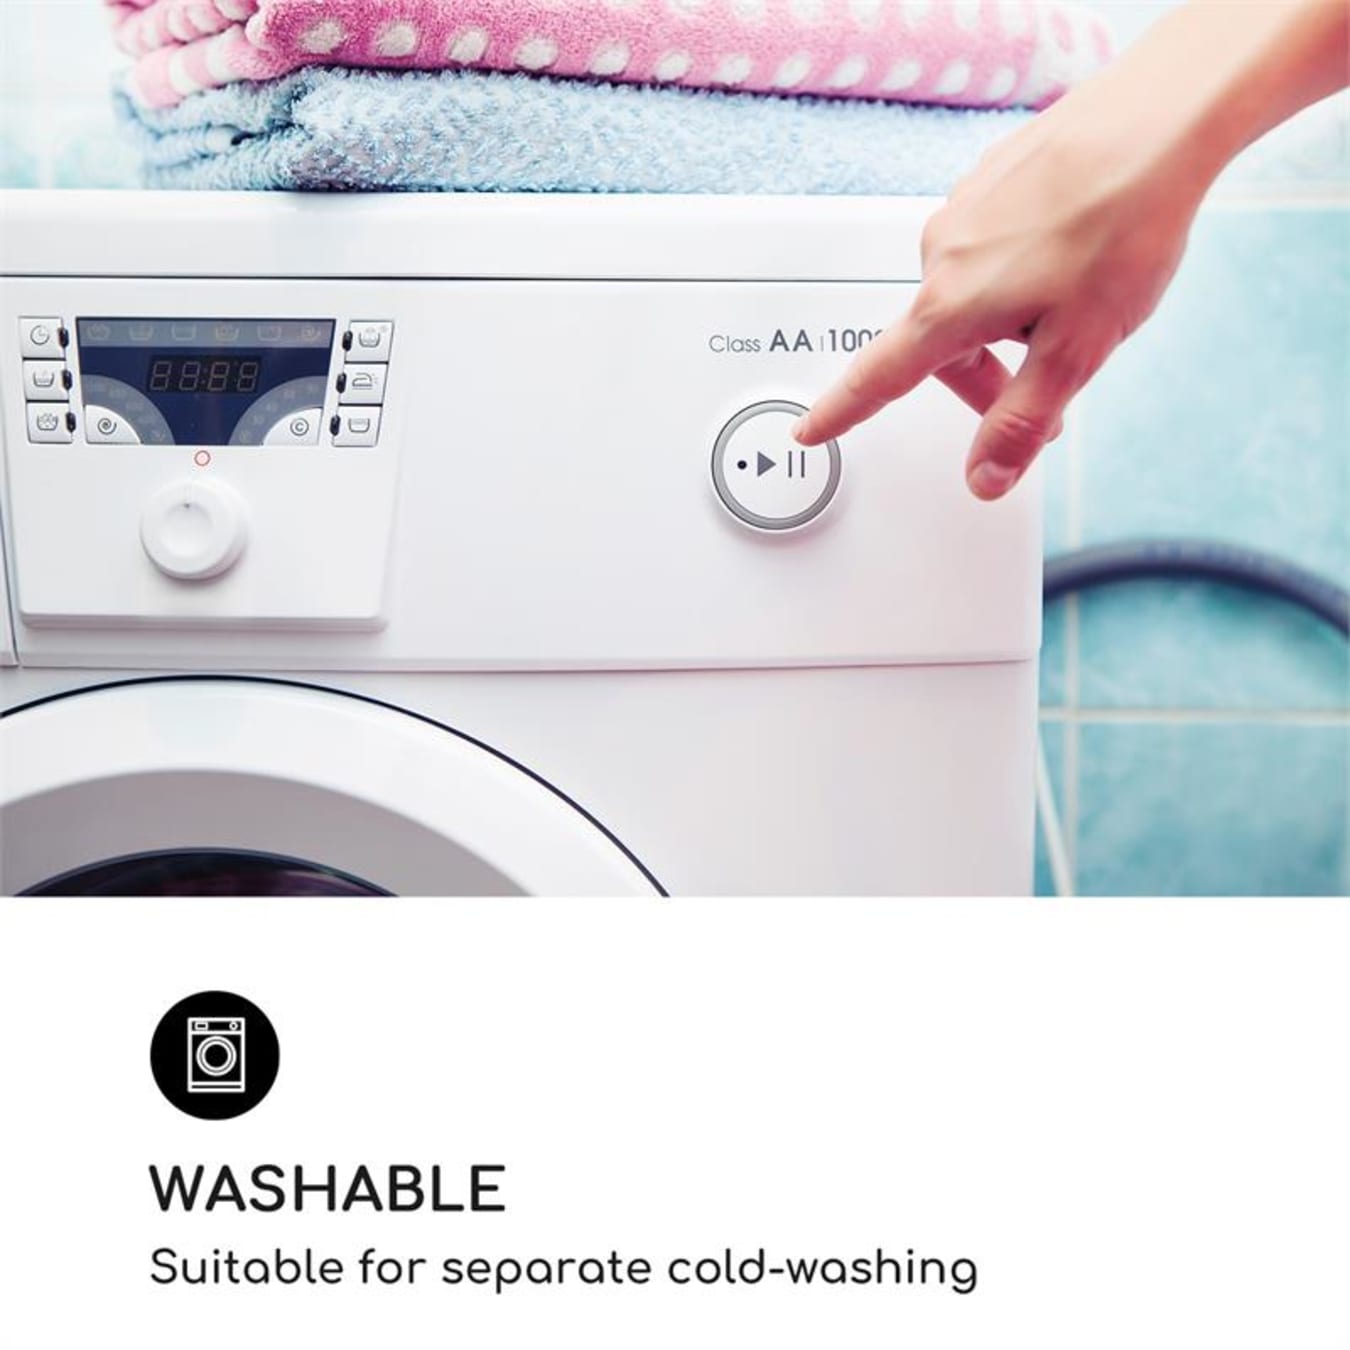 Housse de Machine à laver en Polyester argenté, imperméable, pour